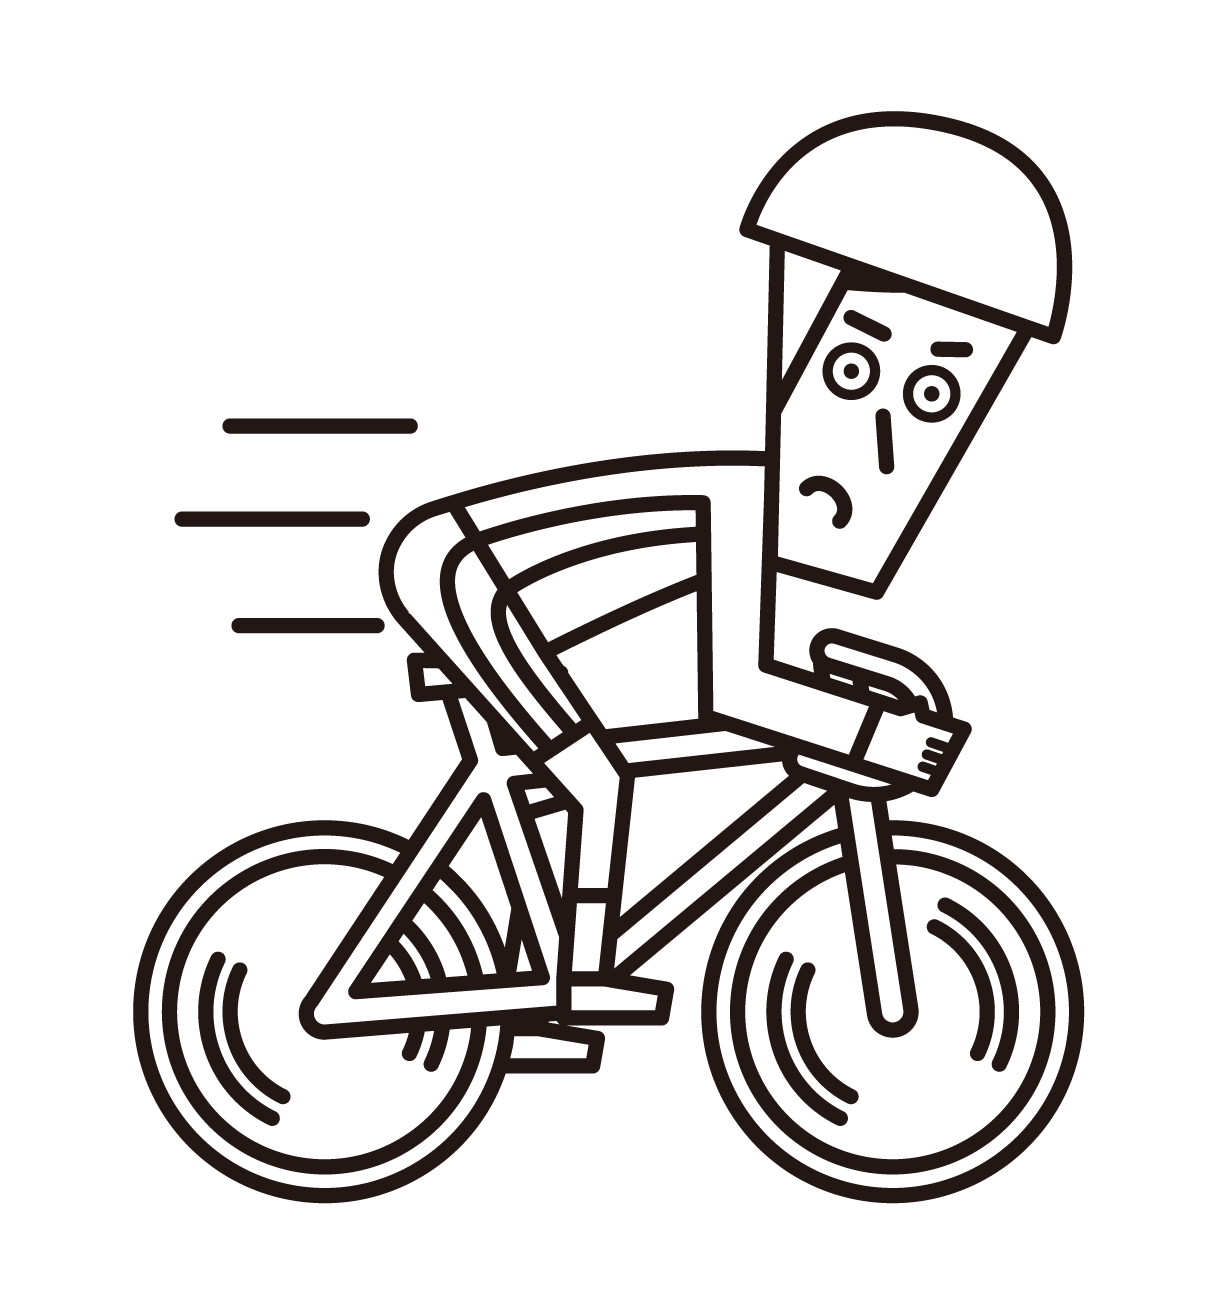 남성 자전거 타는 사람의 삽화